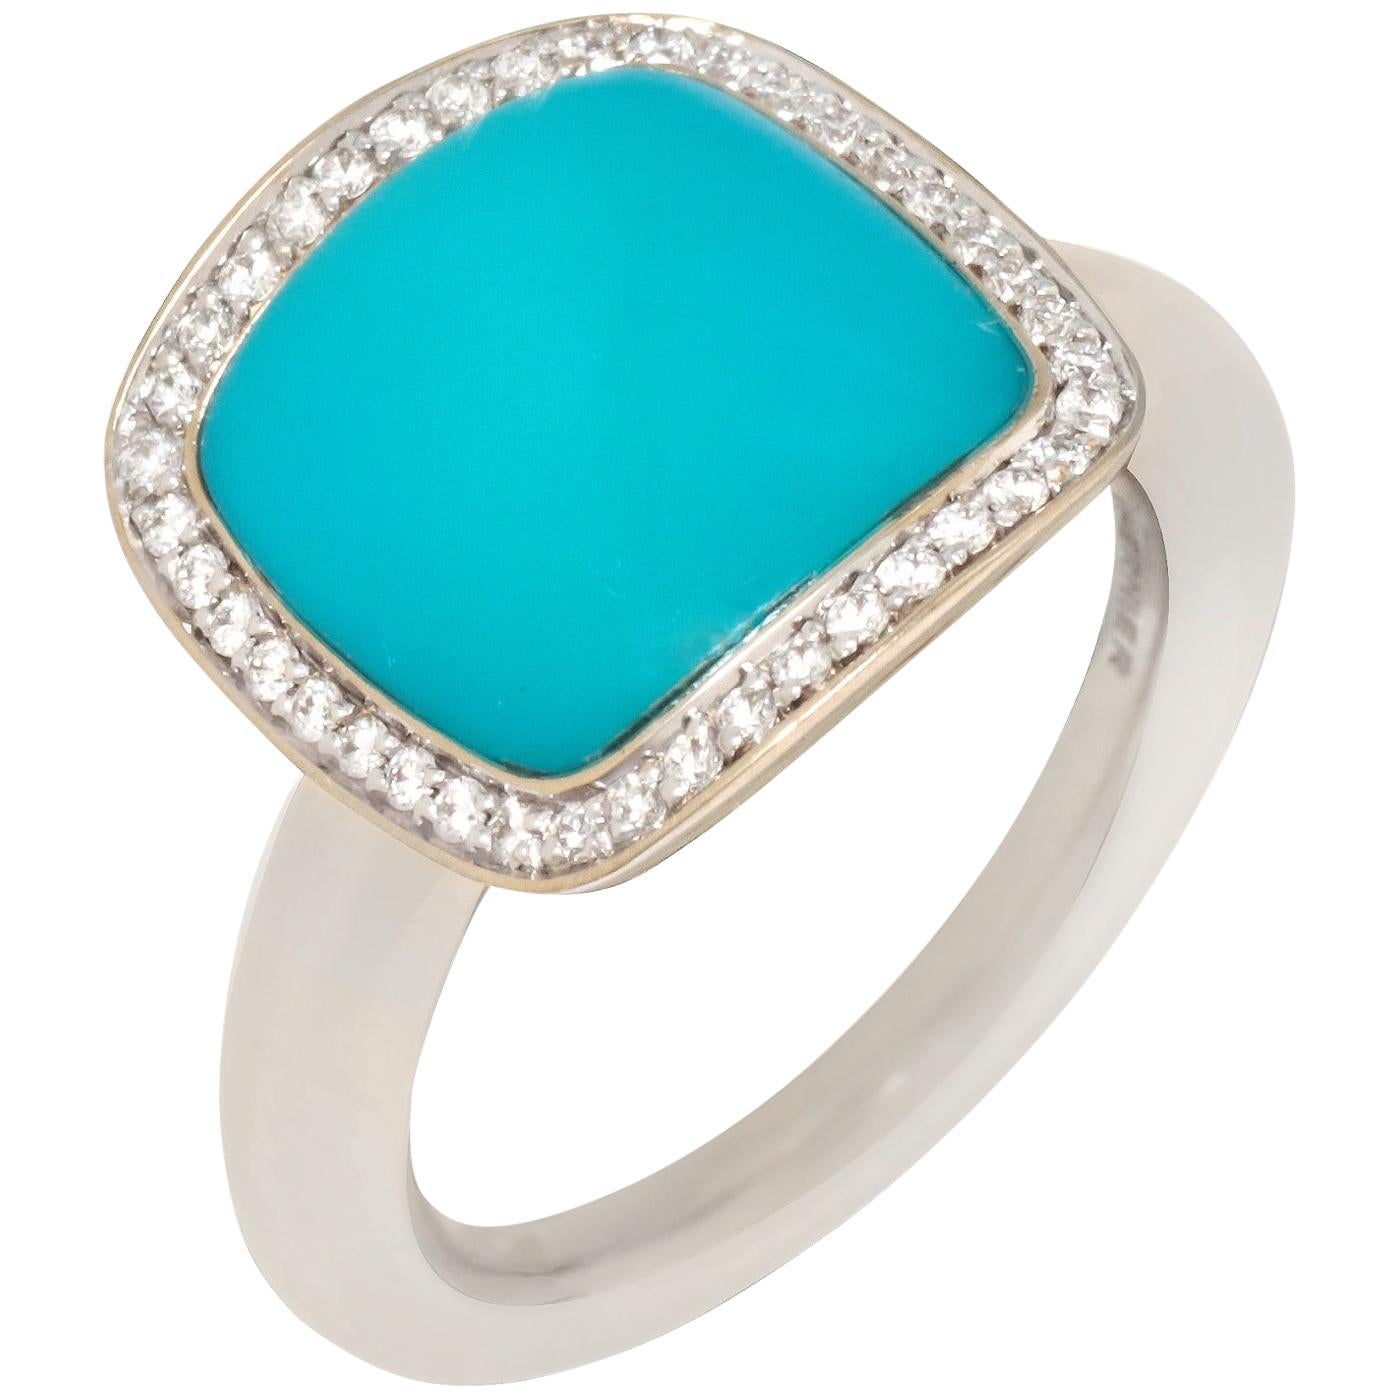 Vhernier 18 Karat White Gold Turquoise Diamond Ring PG1180A-252 For Sale